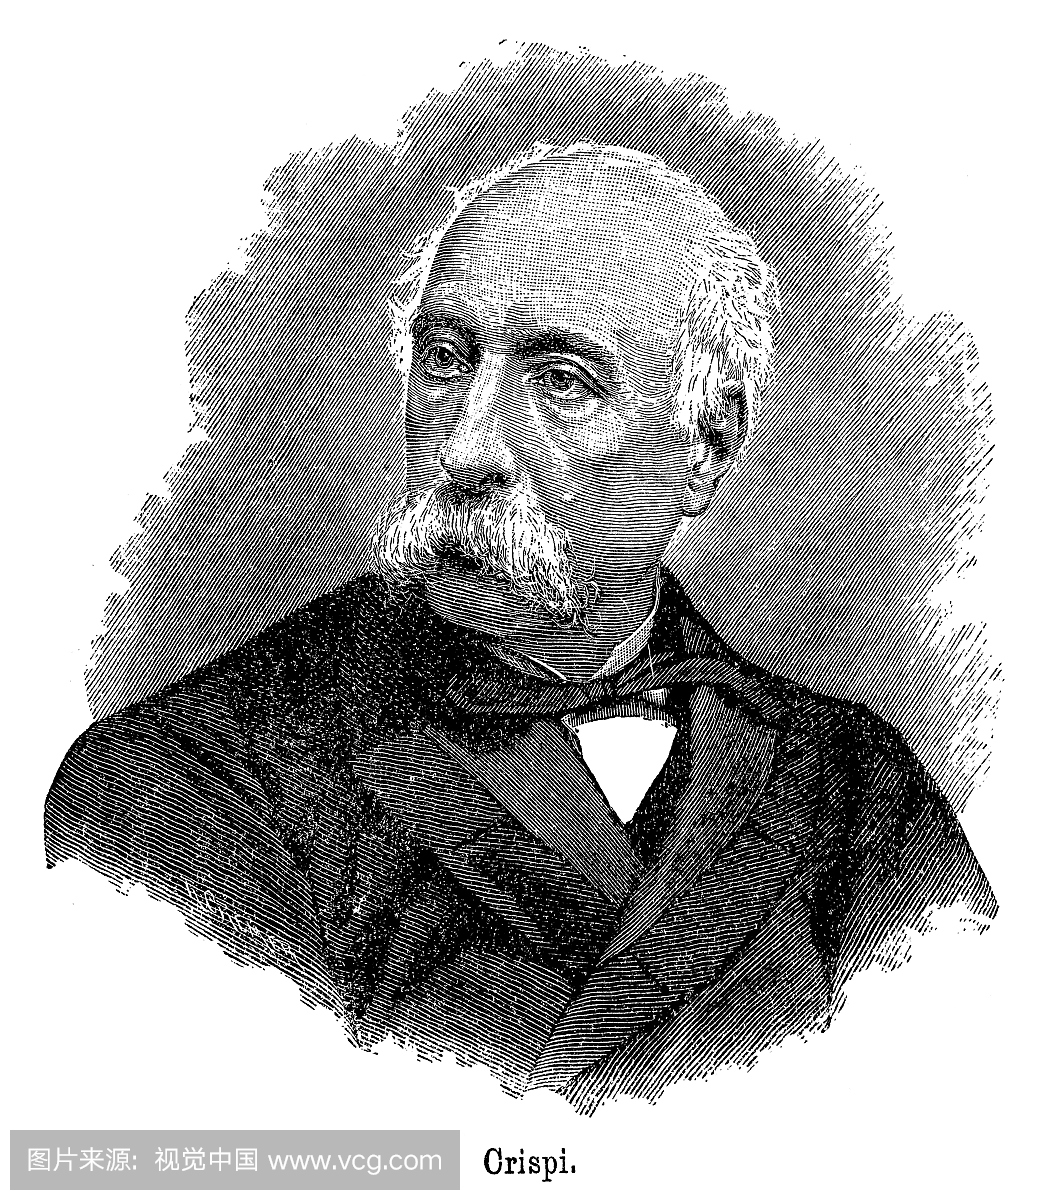 Francesco Crispi(1818年10月4日 - 1901年8月